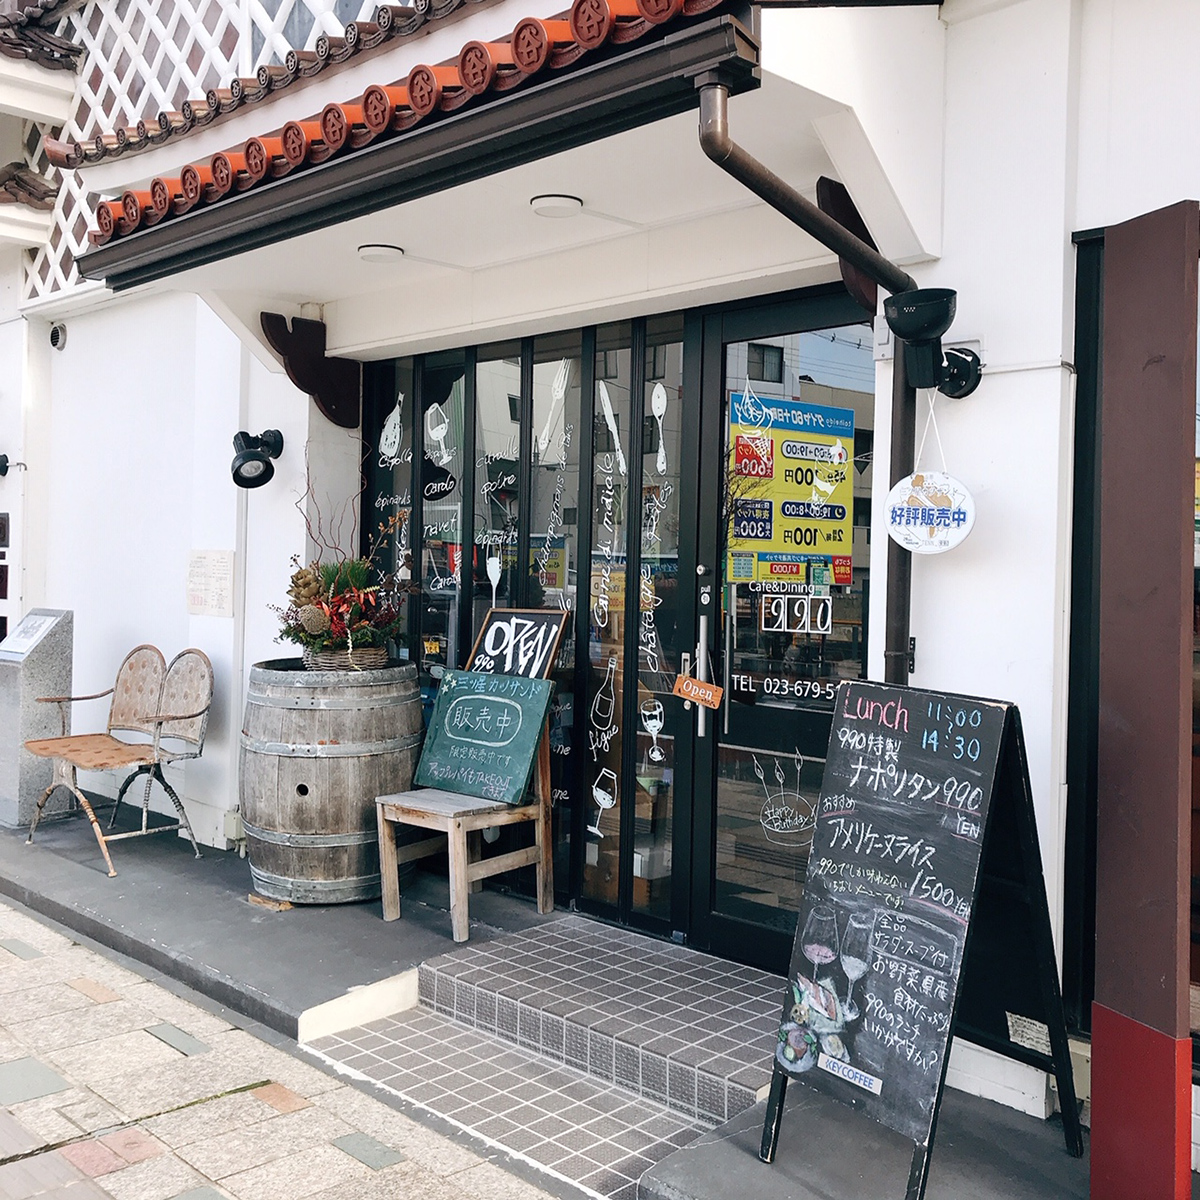 Café & Dining 990 (Beni-no-Kura)